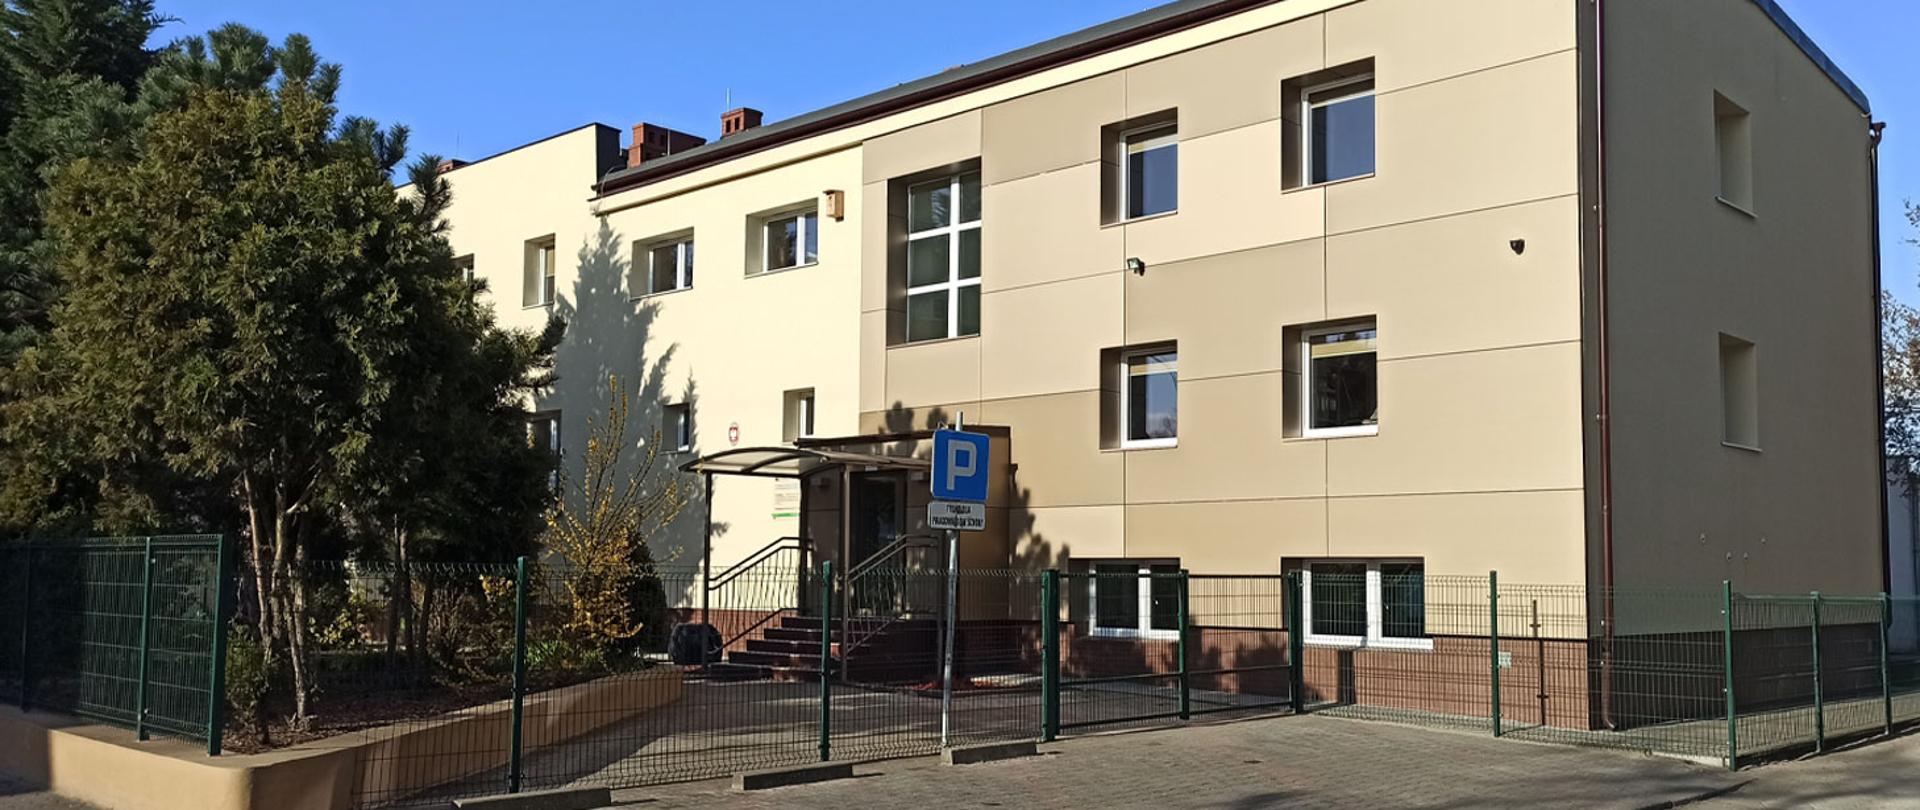 Zdjęcie przedstawia budynek szkoły od strony parkingu.